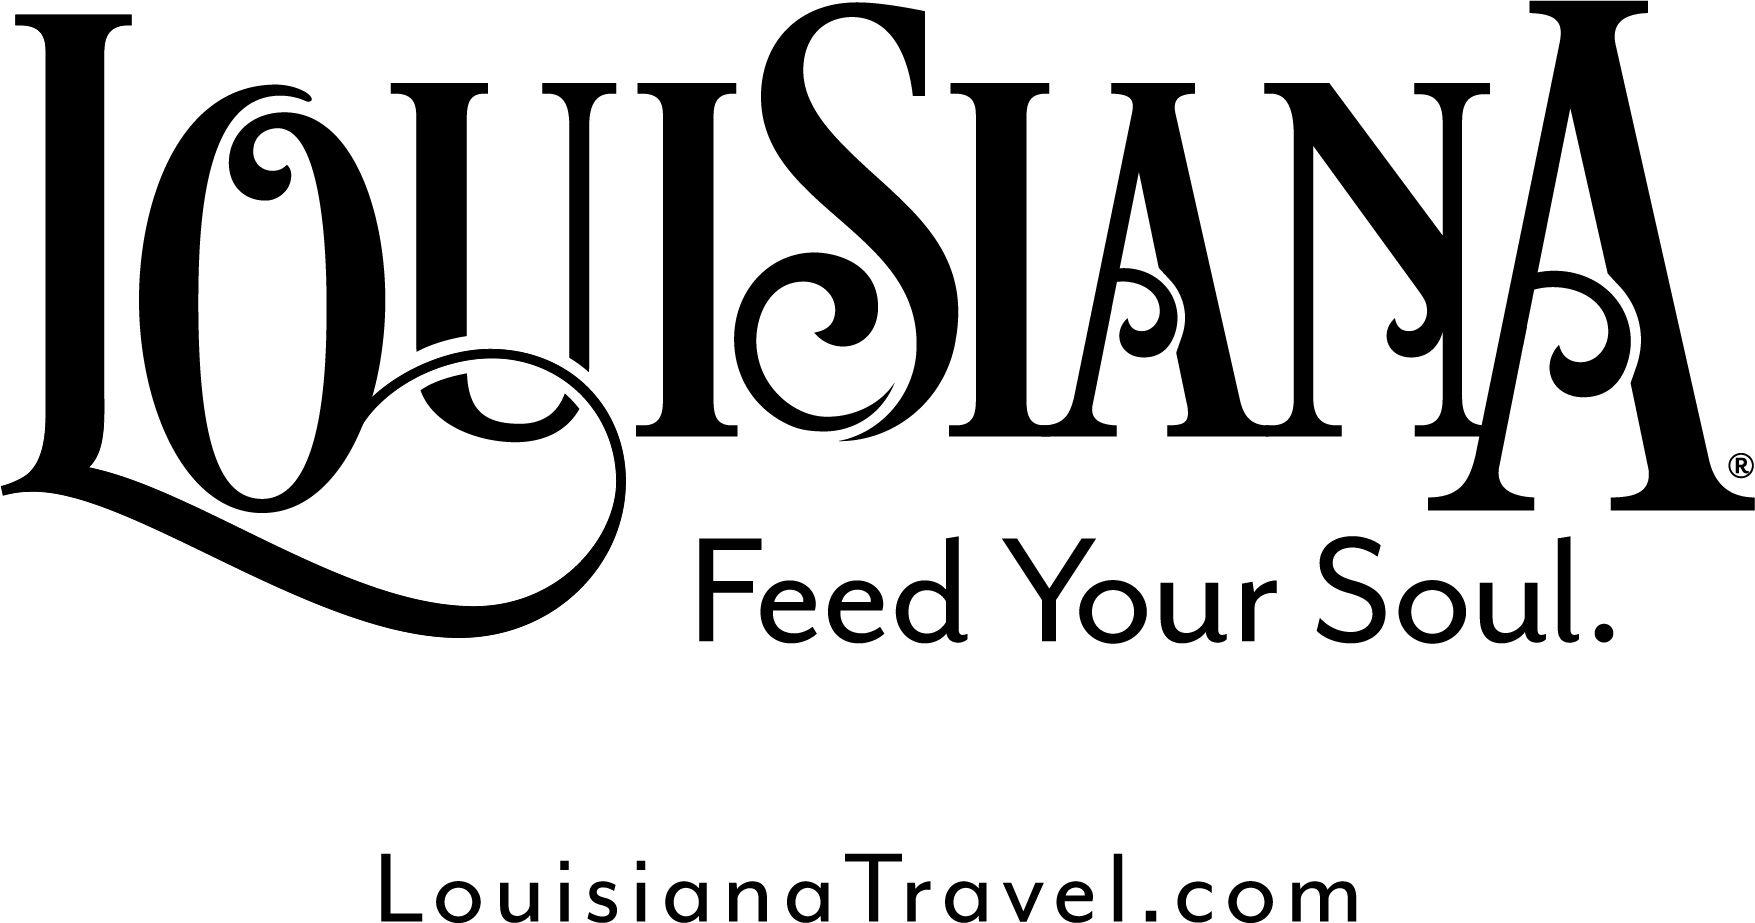 Louisiana.gov Logo - Industry Partners | Louisiana Office of Tourism